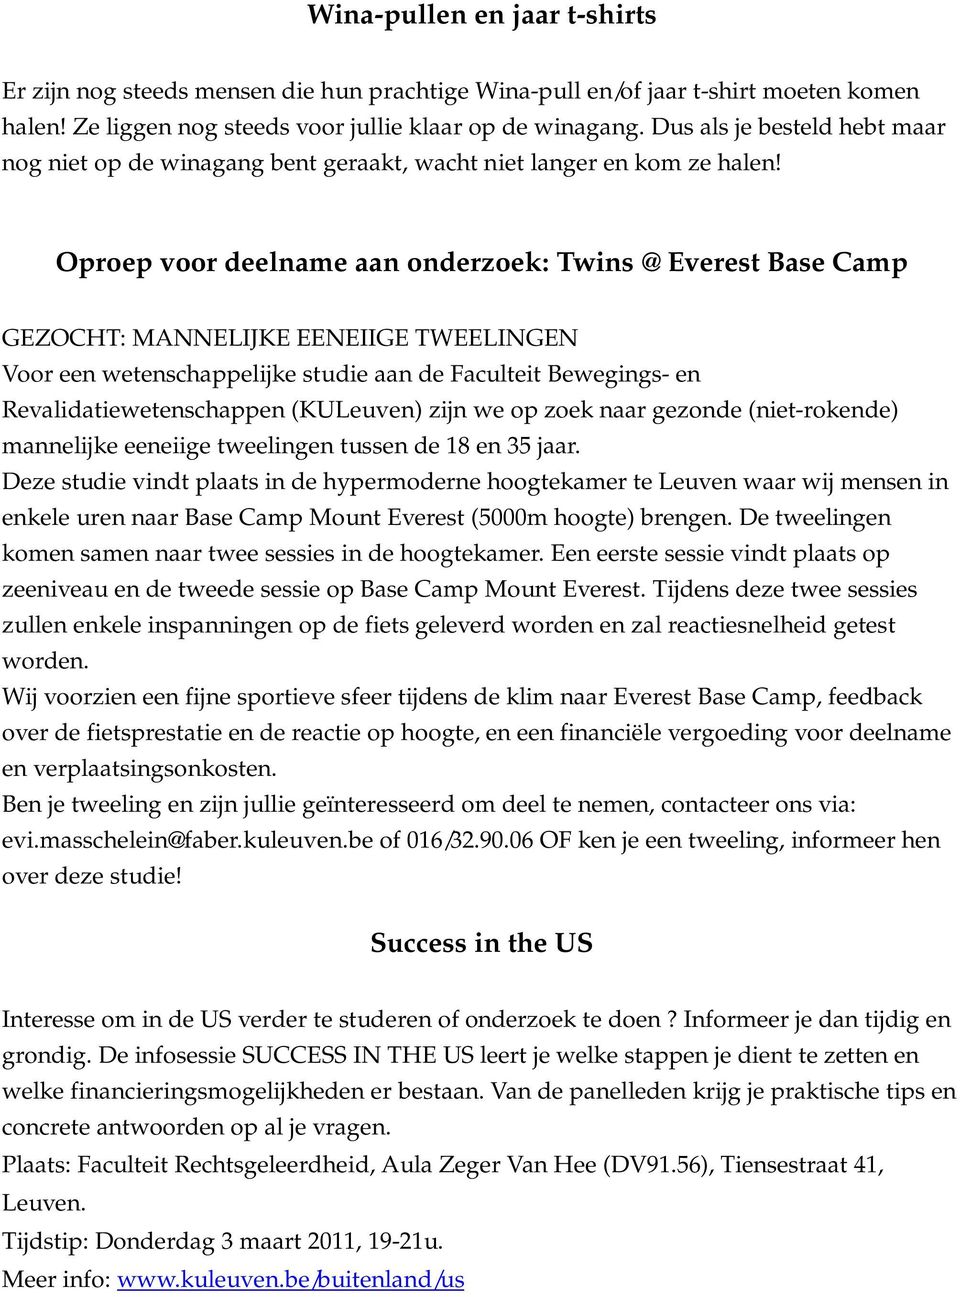 Oproep voor deelname aan onderzoek: Twins @ Everest Base Camp GEZOCHT: MANNELIJKE EENEIIGE TWEELINGEN Voor een wetenschappelijke studie aan de Faculteit Bewegings- en Revalidatiewetenschappen